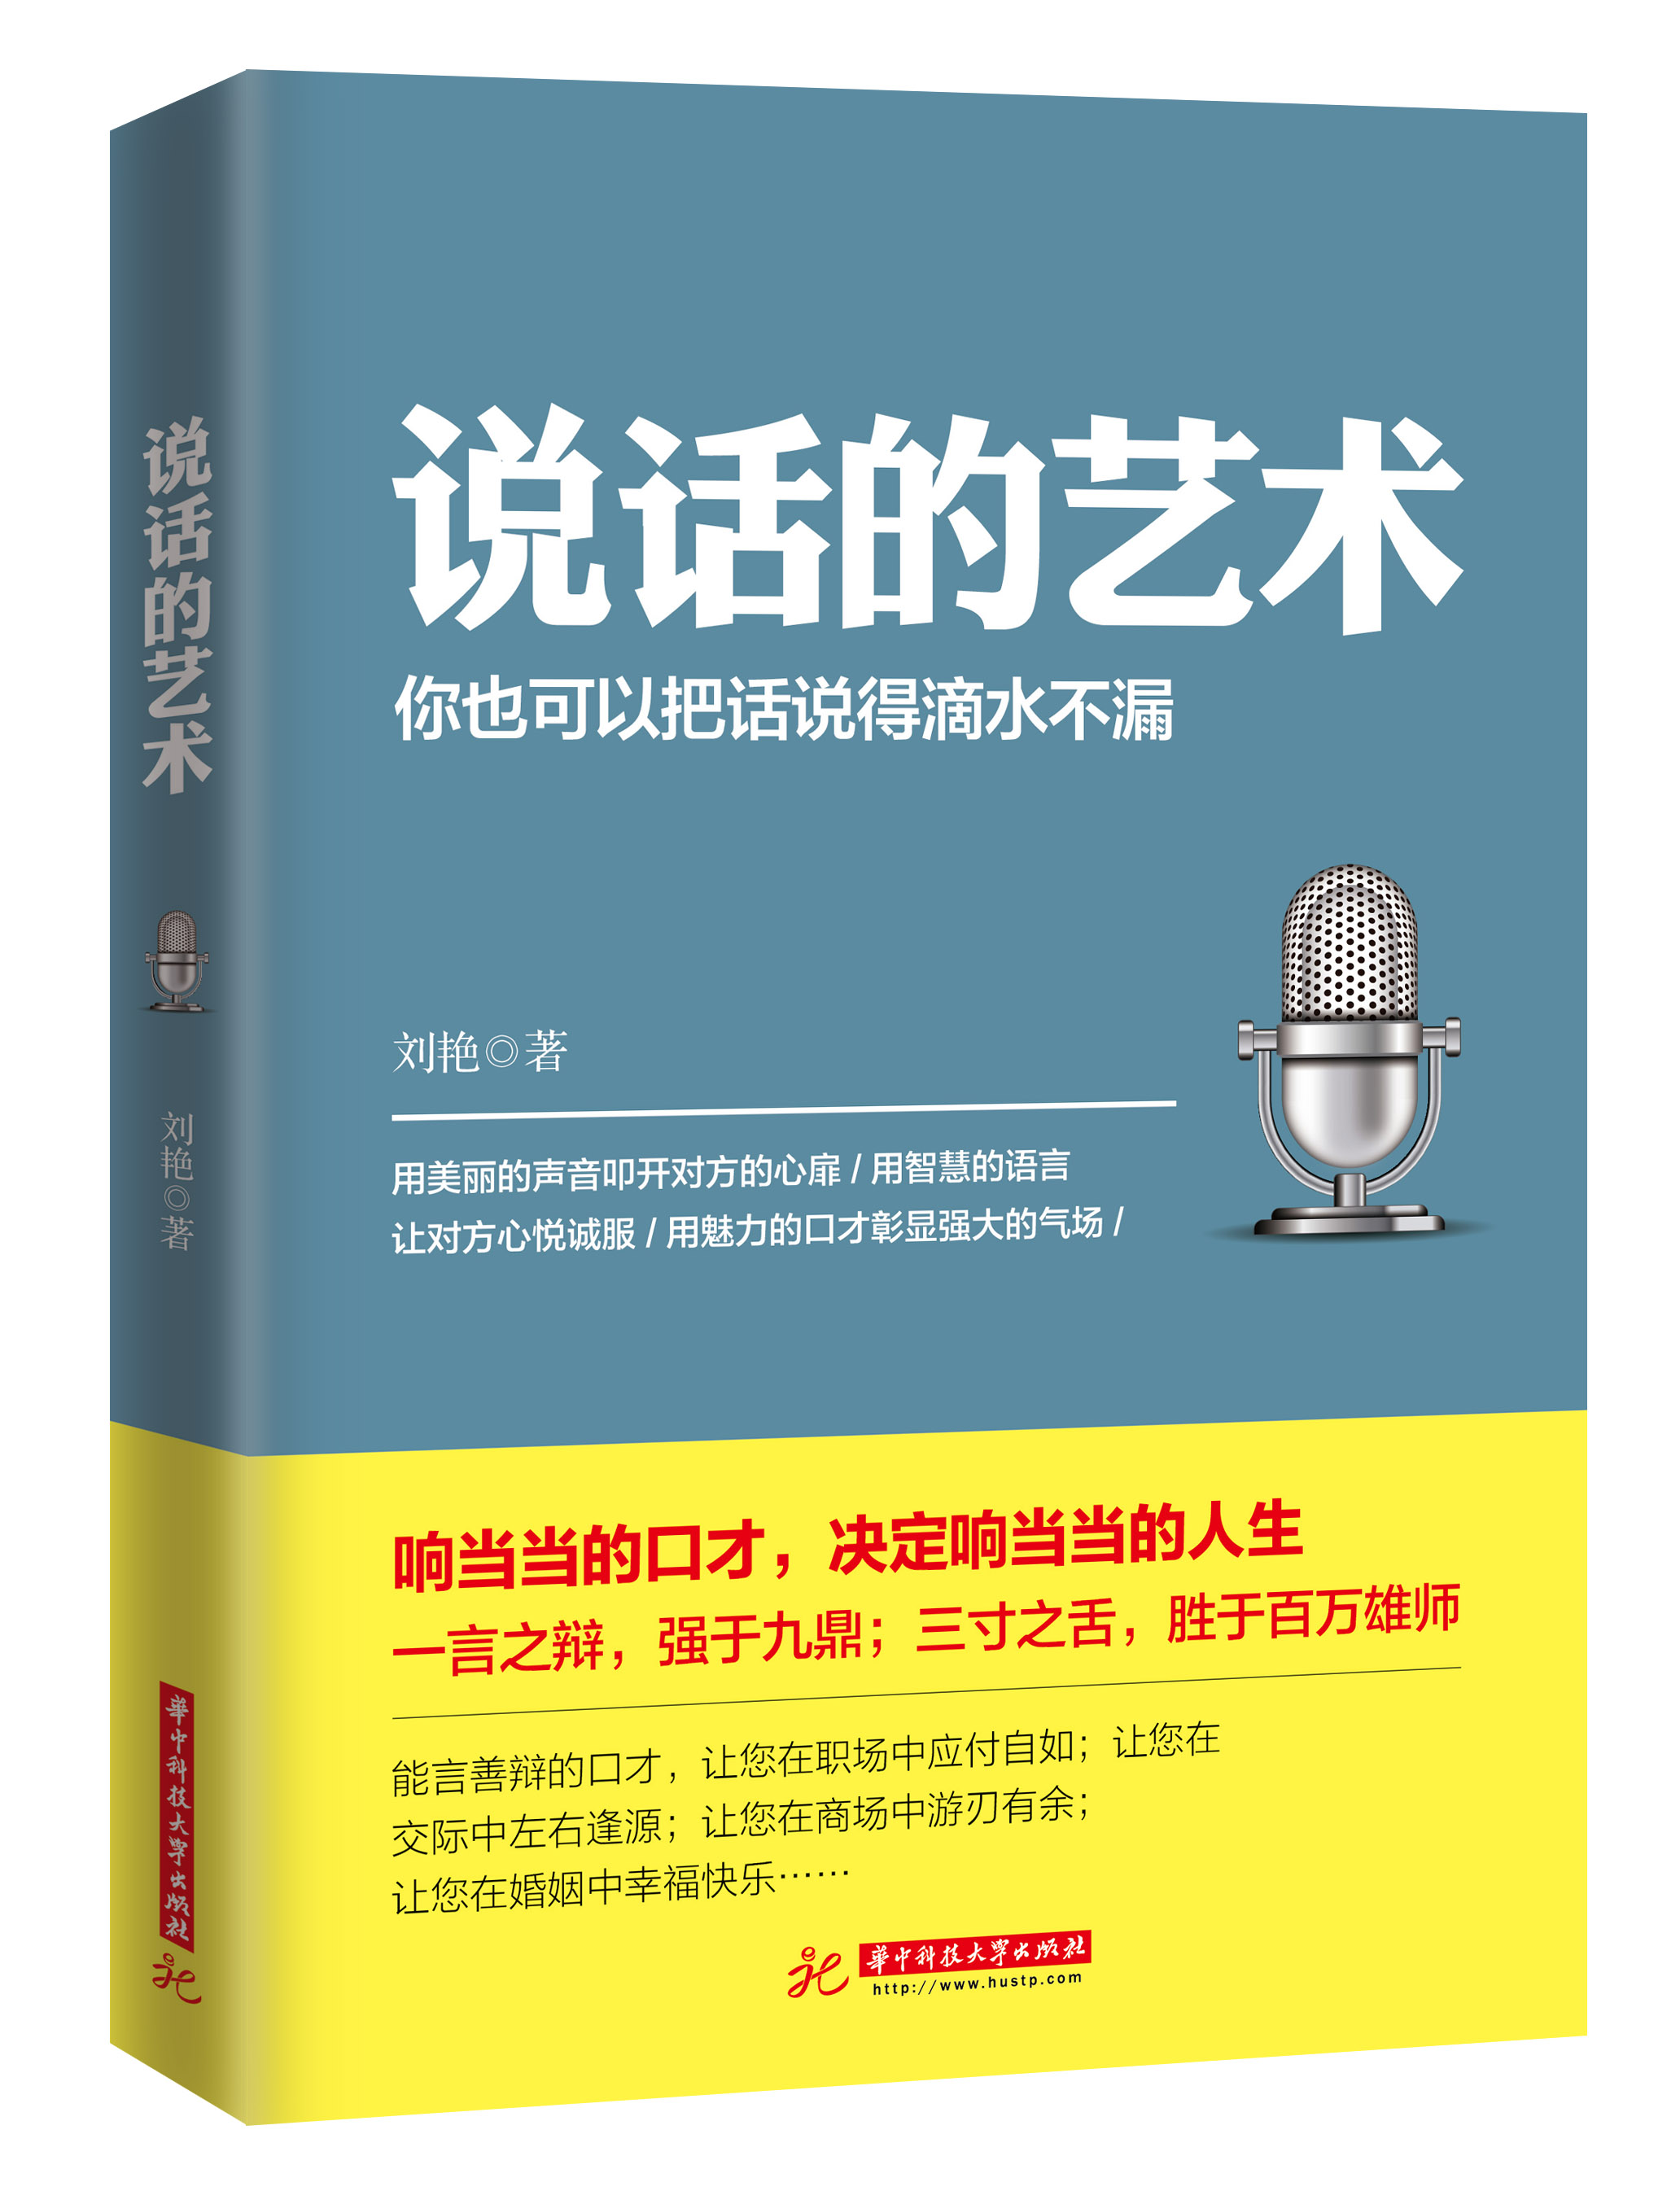 說話的藝術(華中科技大學出版社出版圖書)